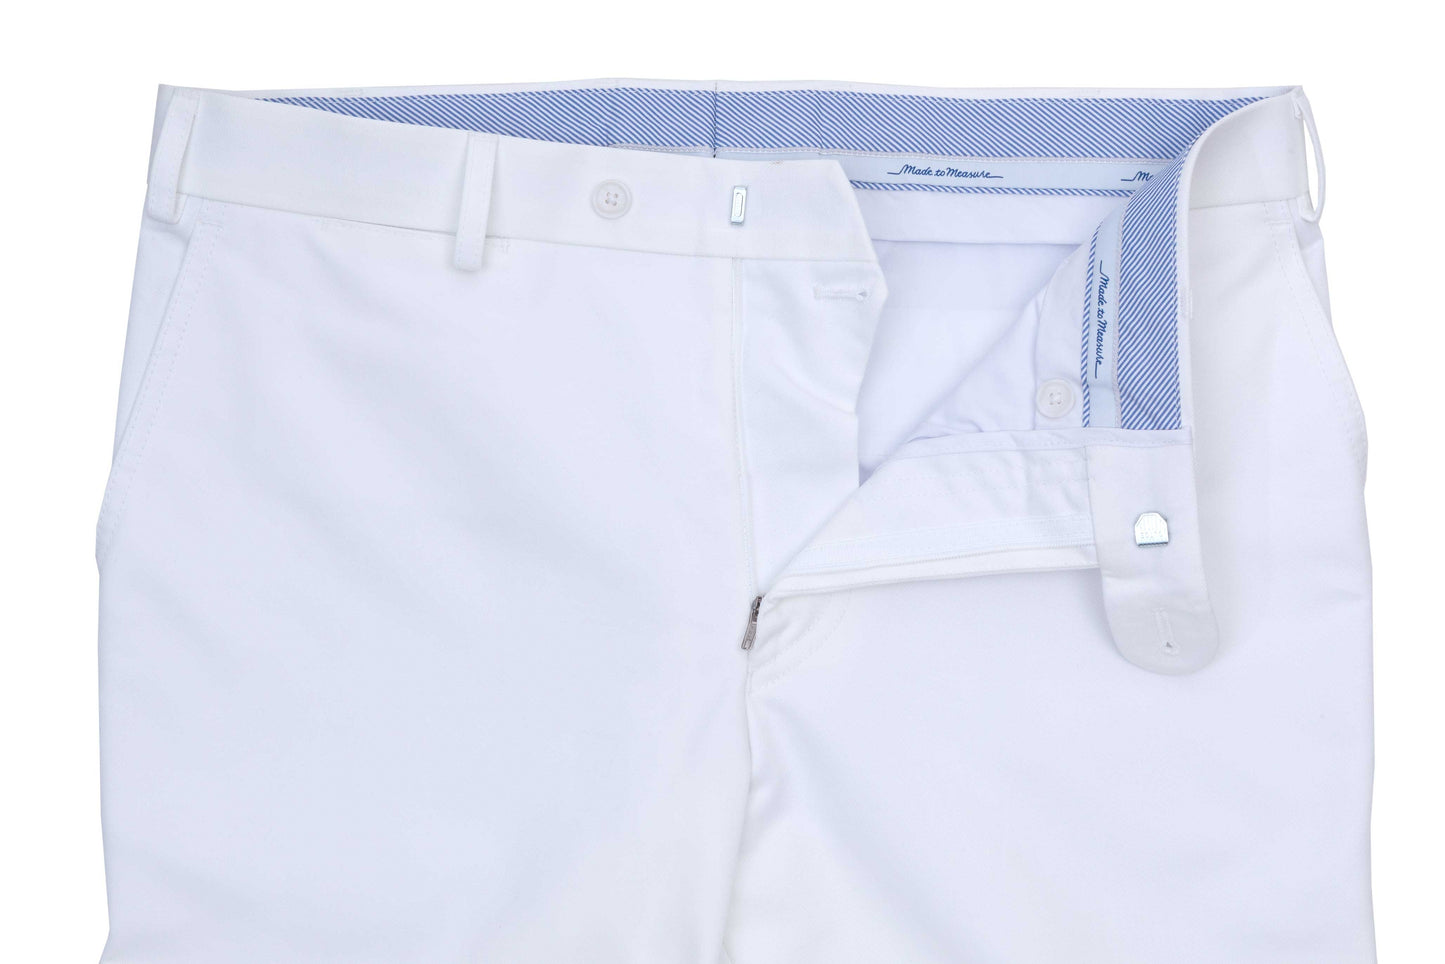 Regent Trousers - 'Collins' - White Cotton - Regent Tailoring